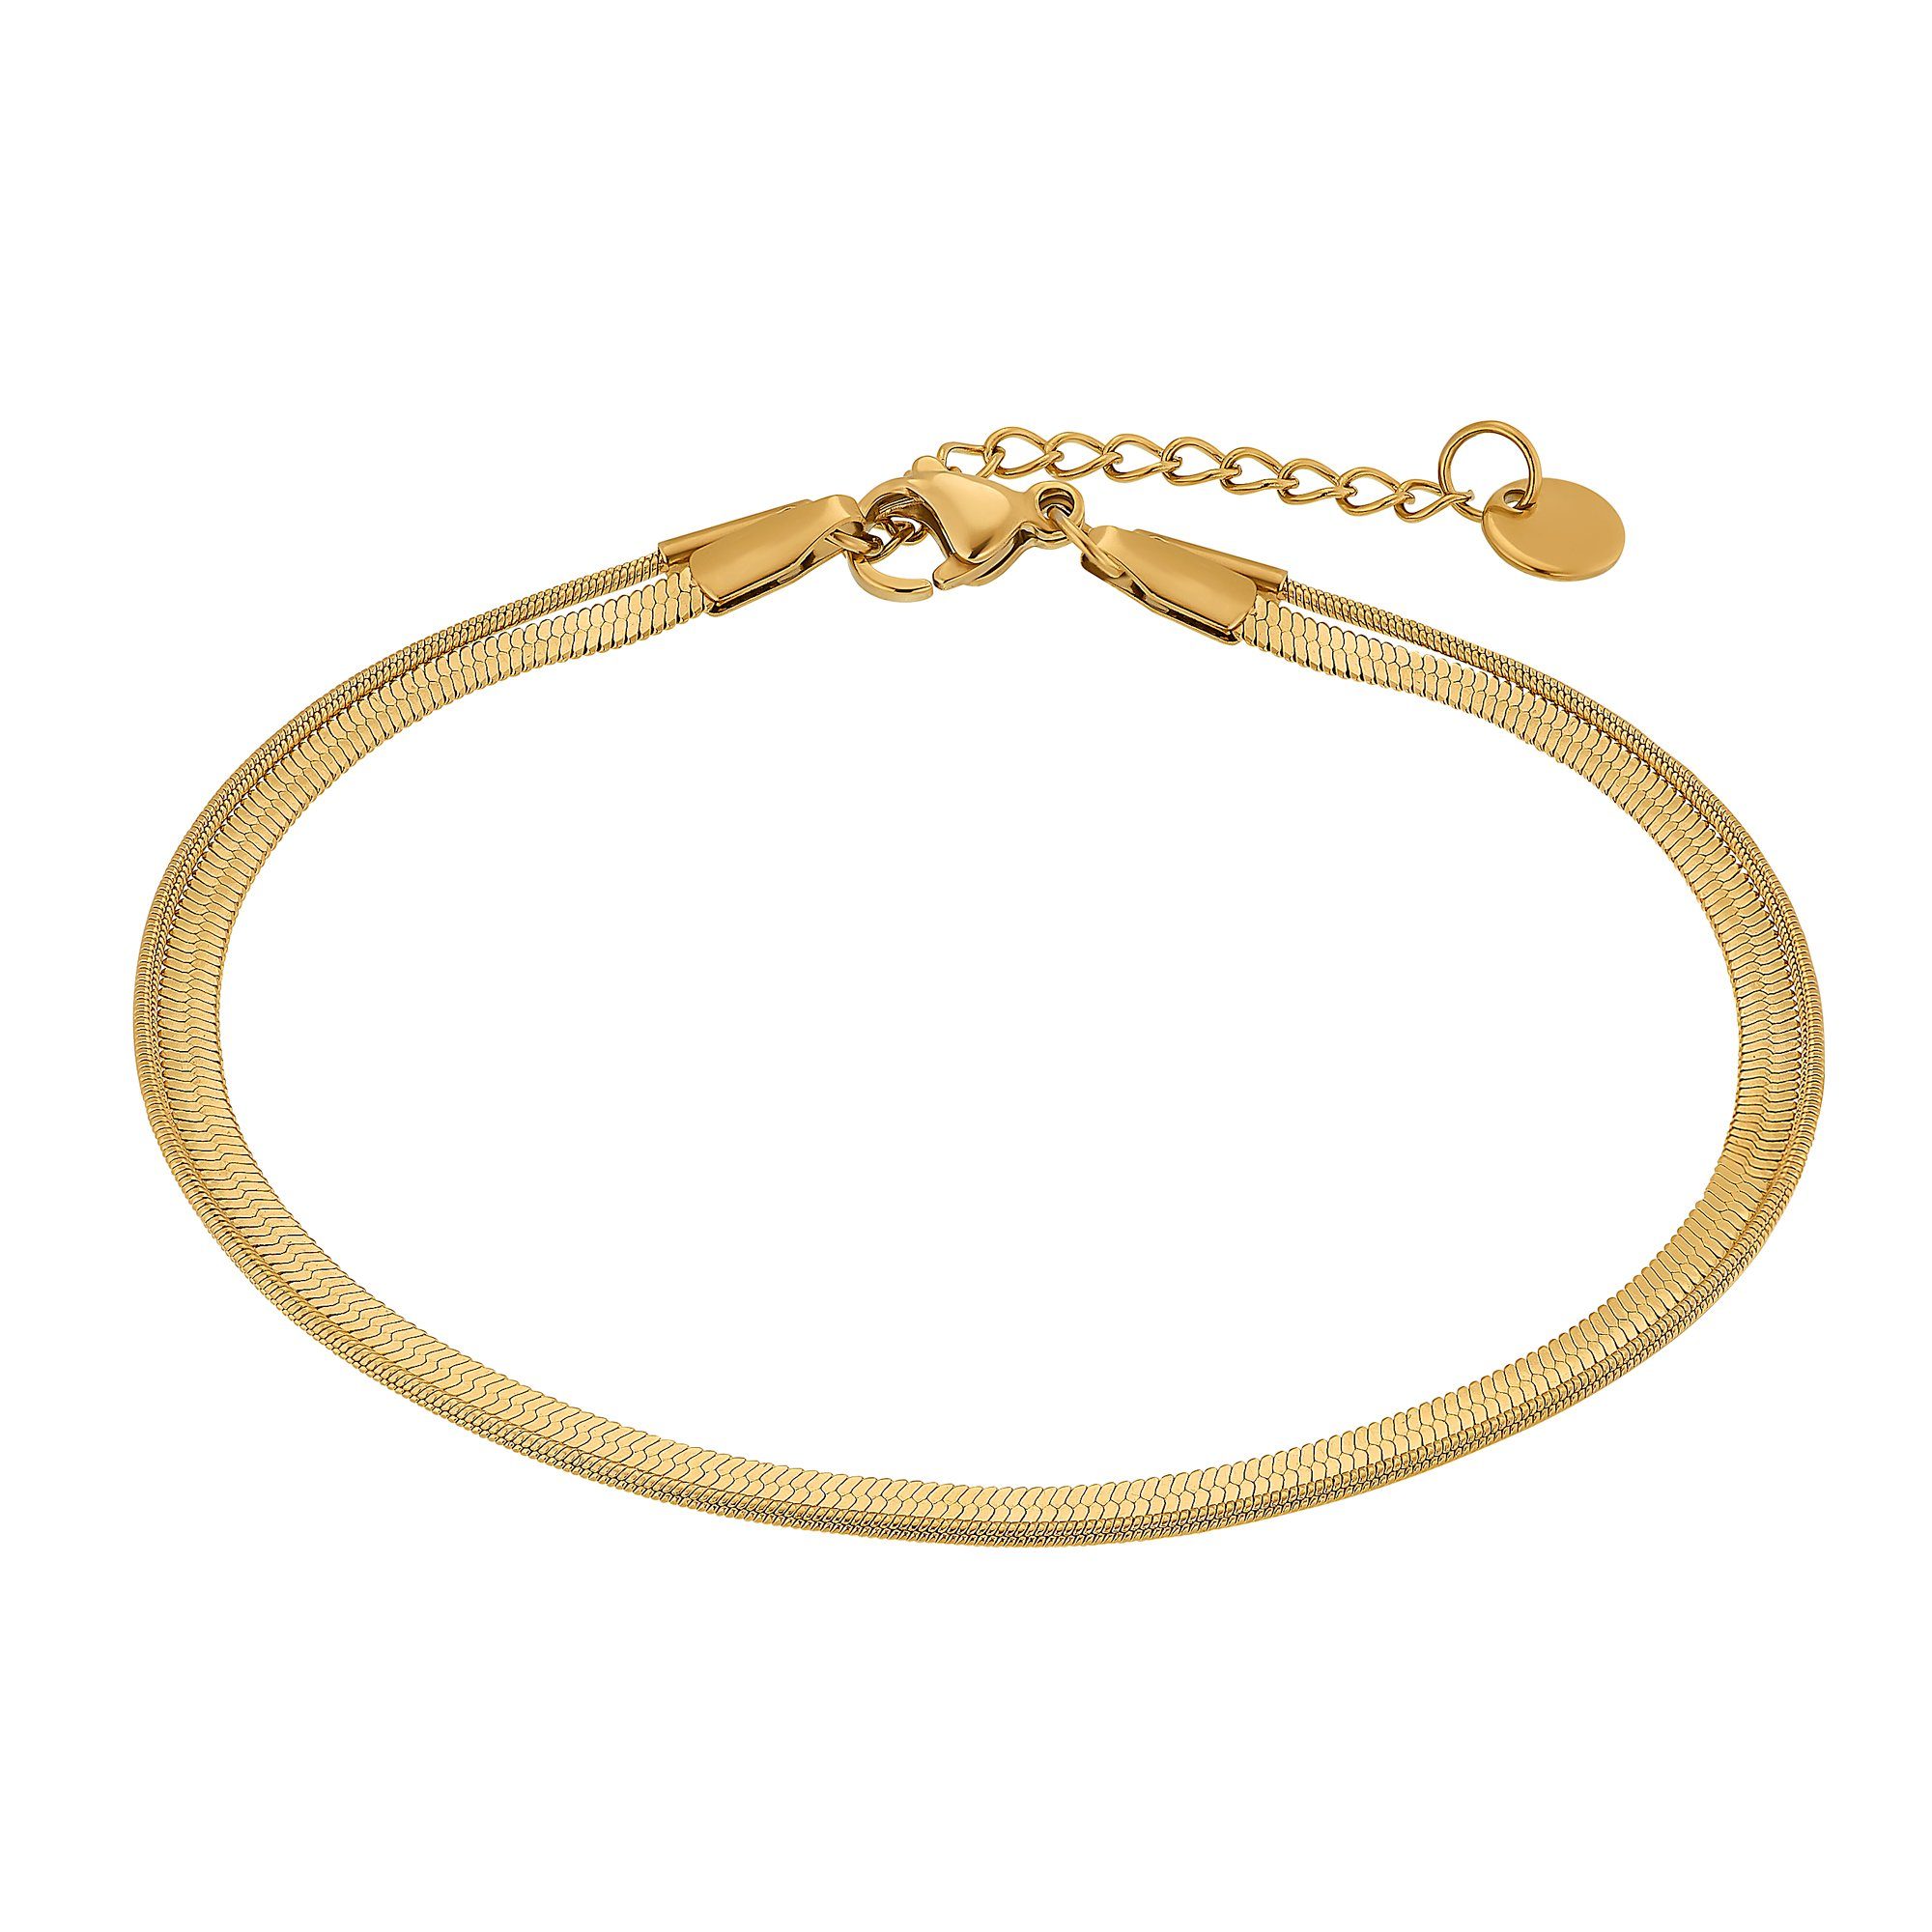 Heideman Armband Thiago schwarz farben (Armband, inkl. Geschenkverpackung), Armkette für Männer goldfarben